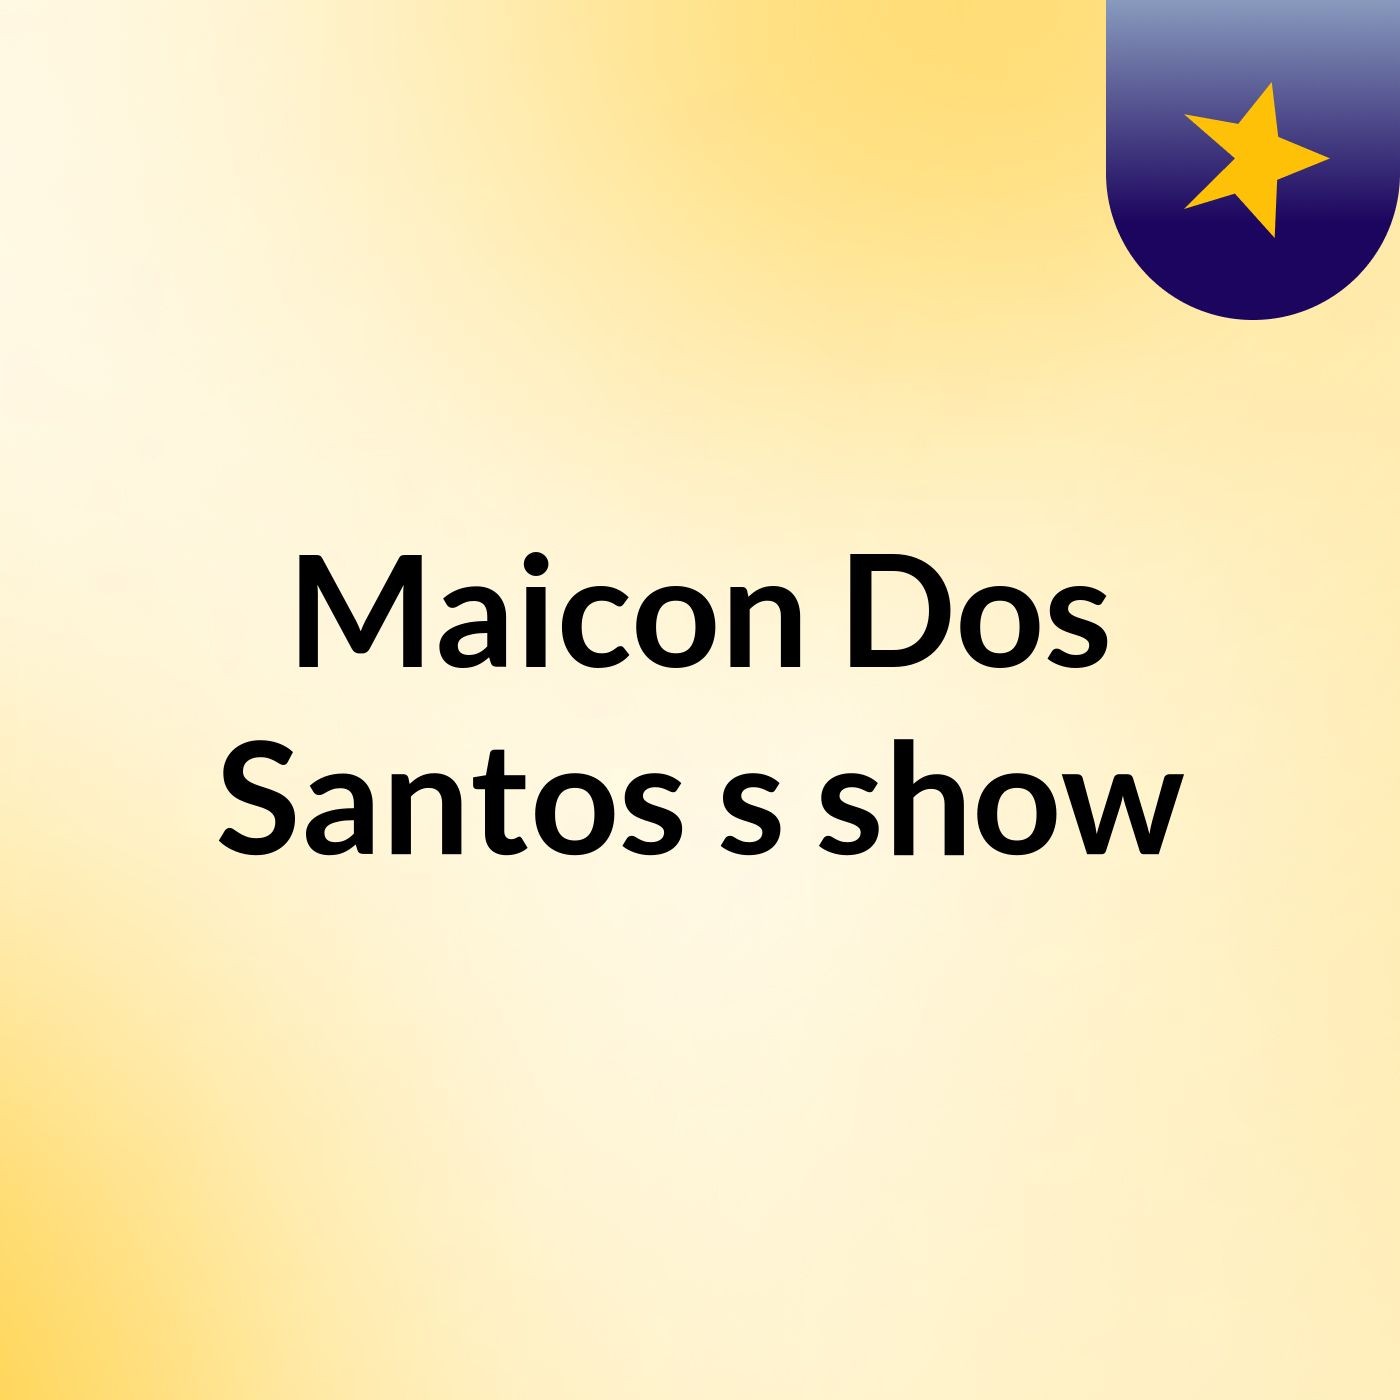 Maicon Dos Santos's show